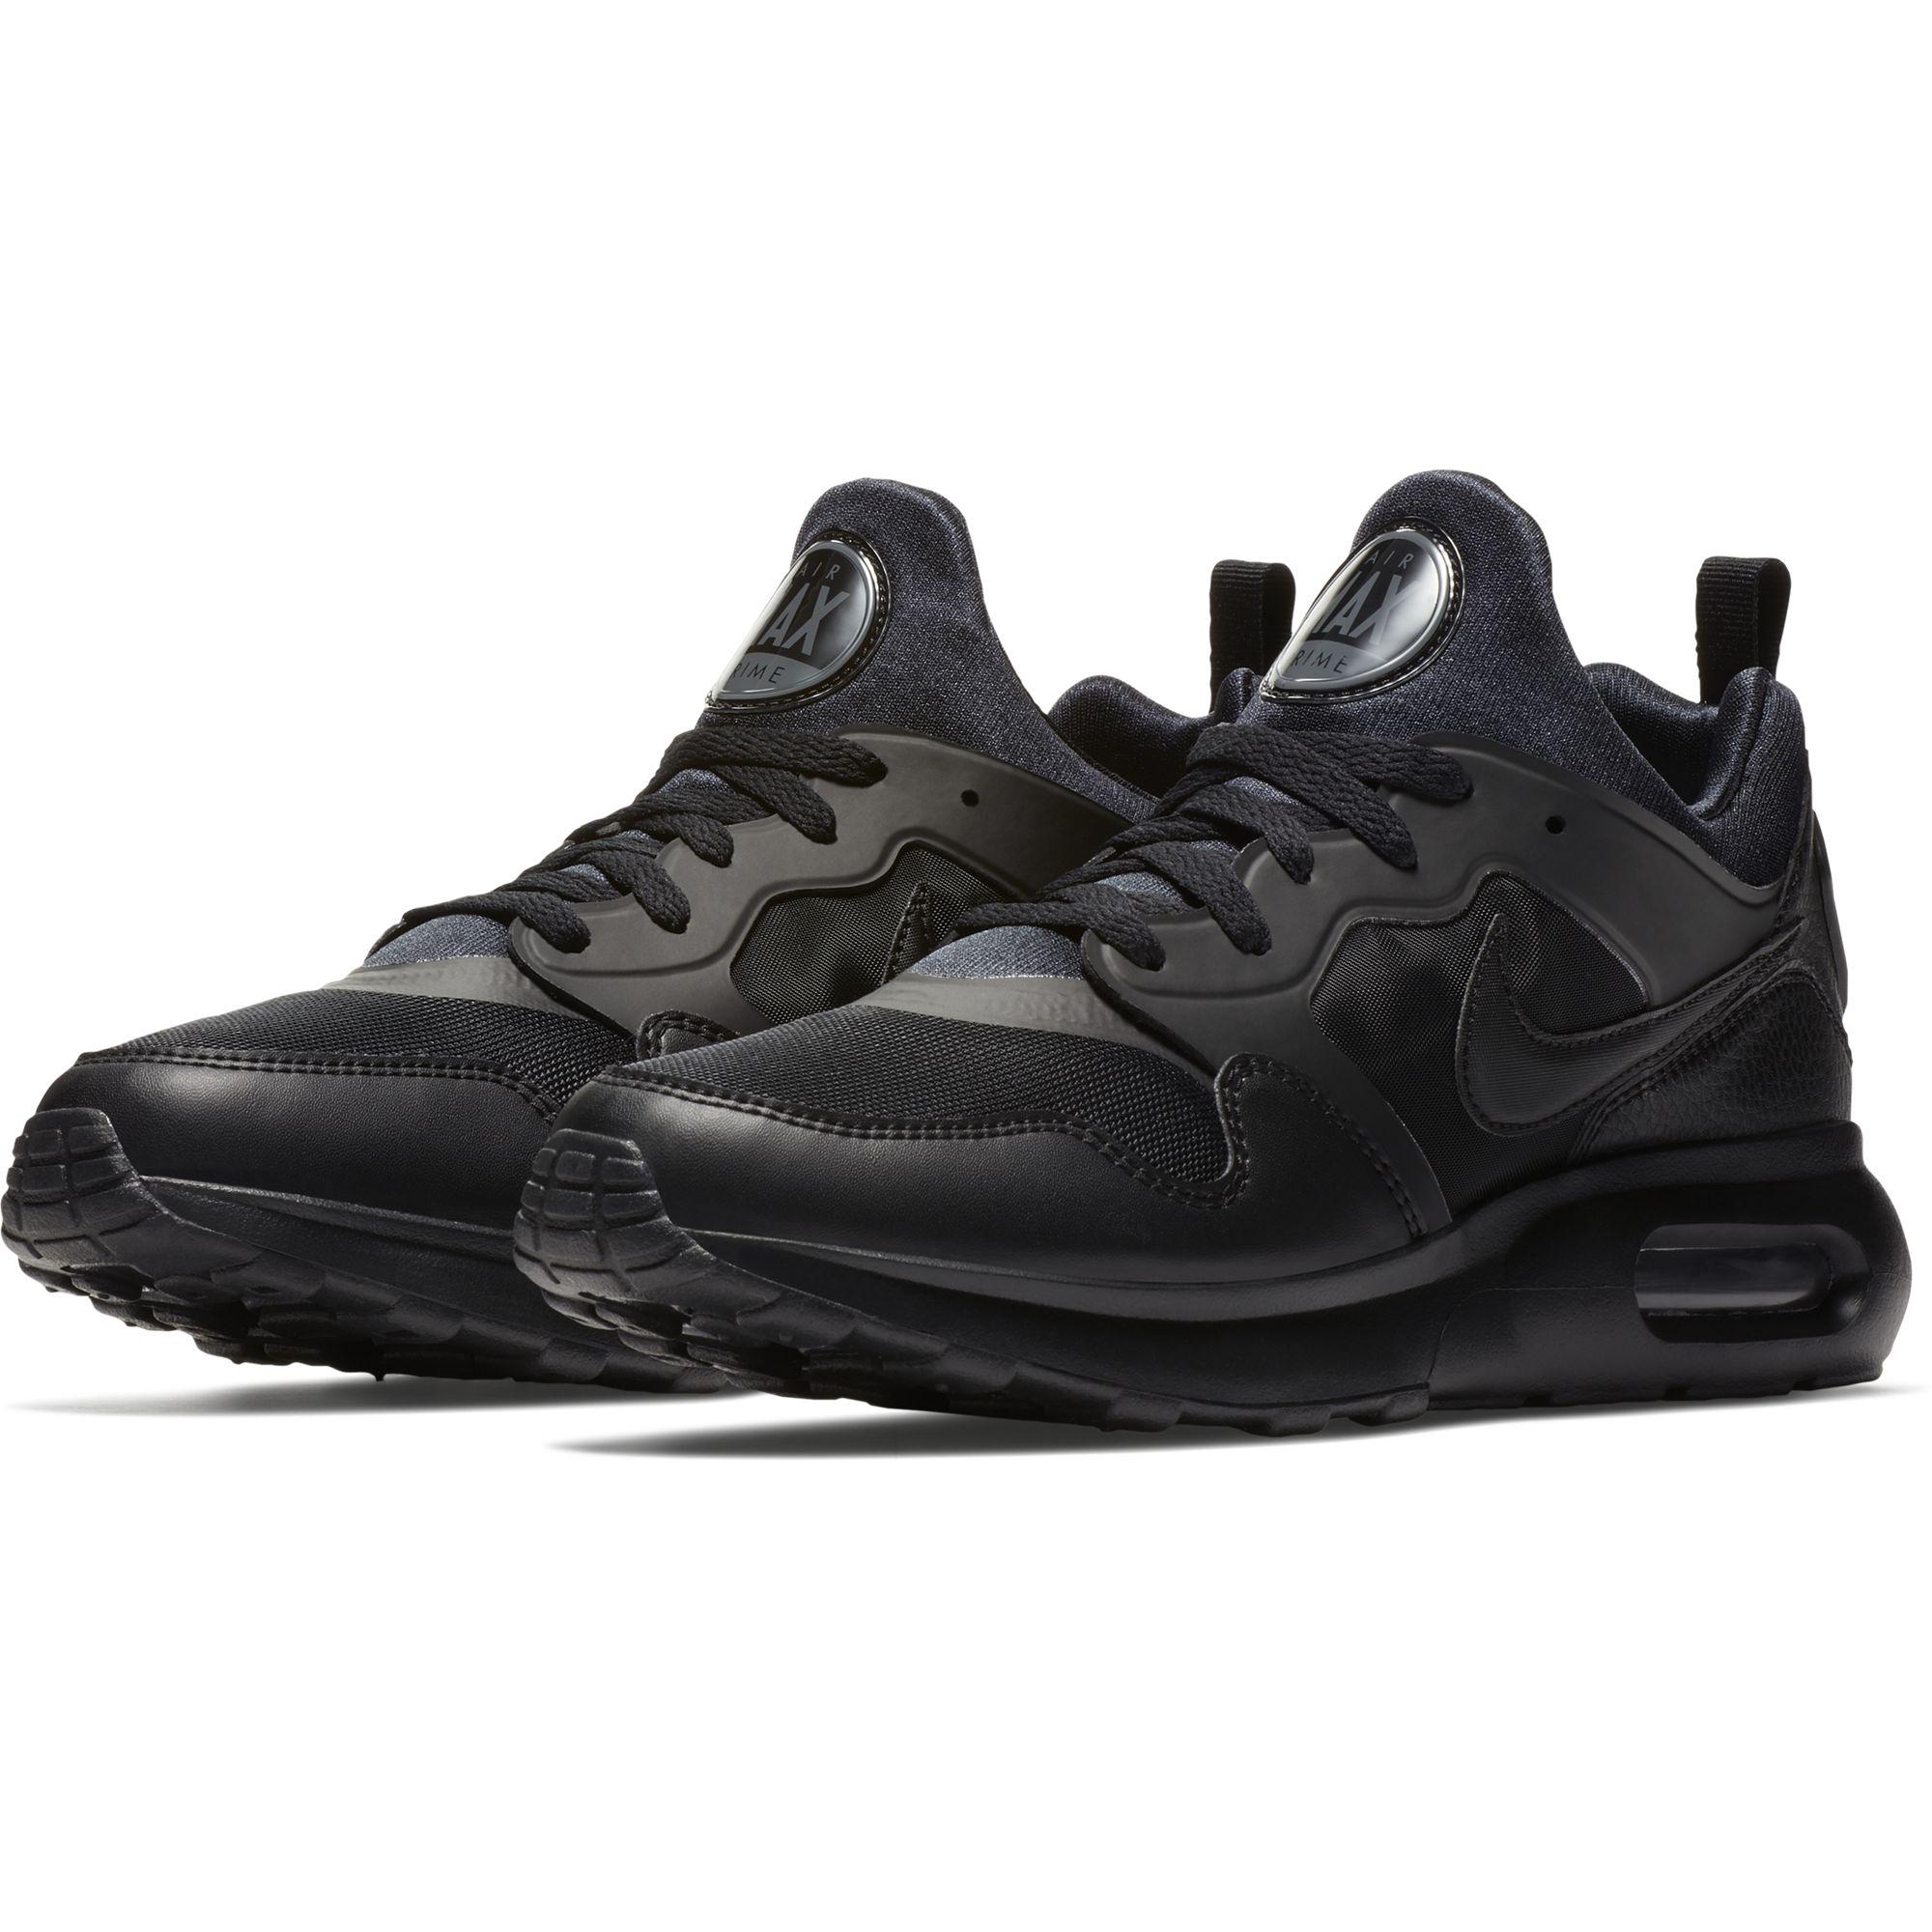  Nike  Mens Air  Max  Prime  Shoes Black Dark Grey 